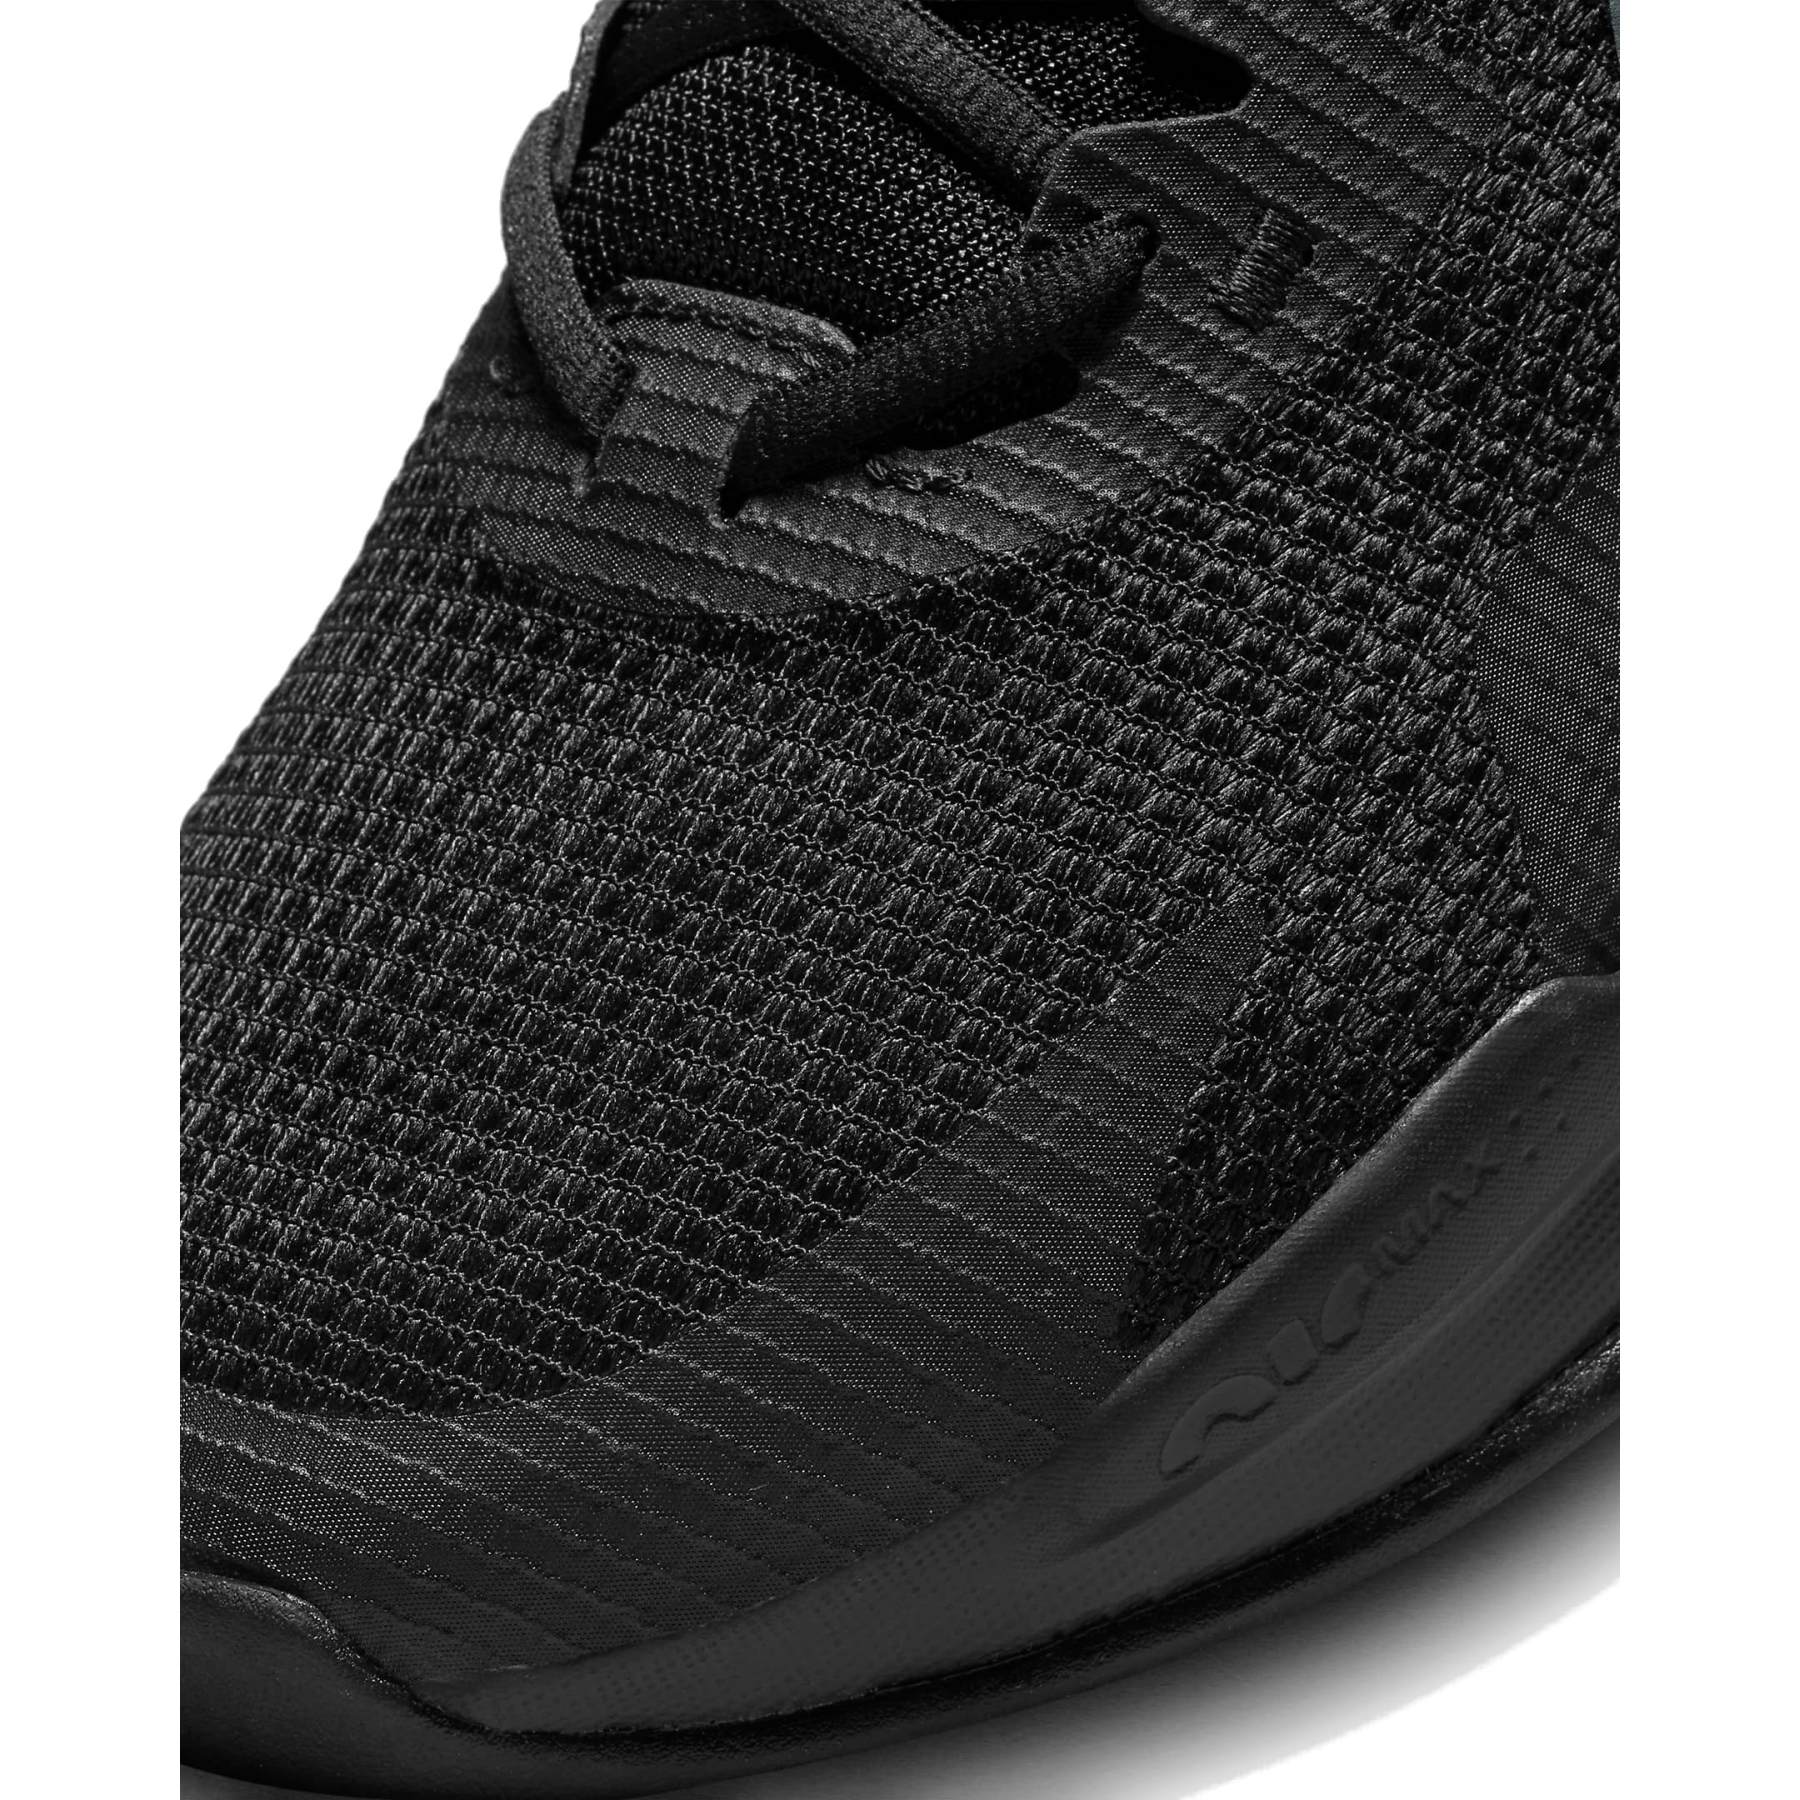 Zapatillas de Hombre Nike Air Max Alpha Trainer 5 DM0829 301